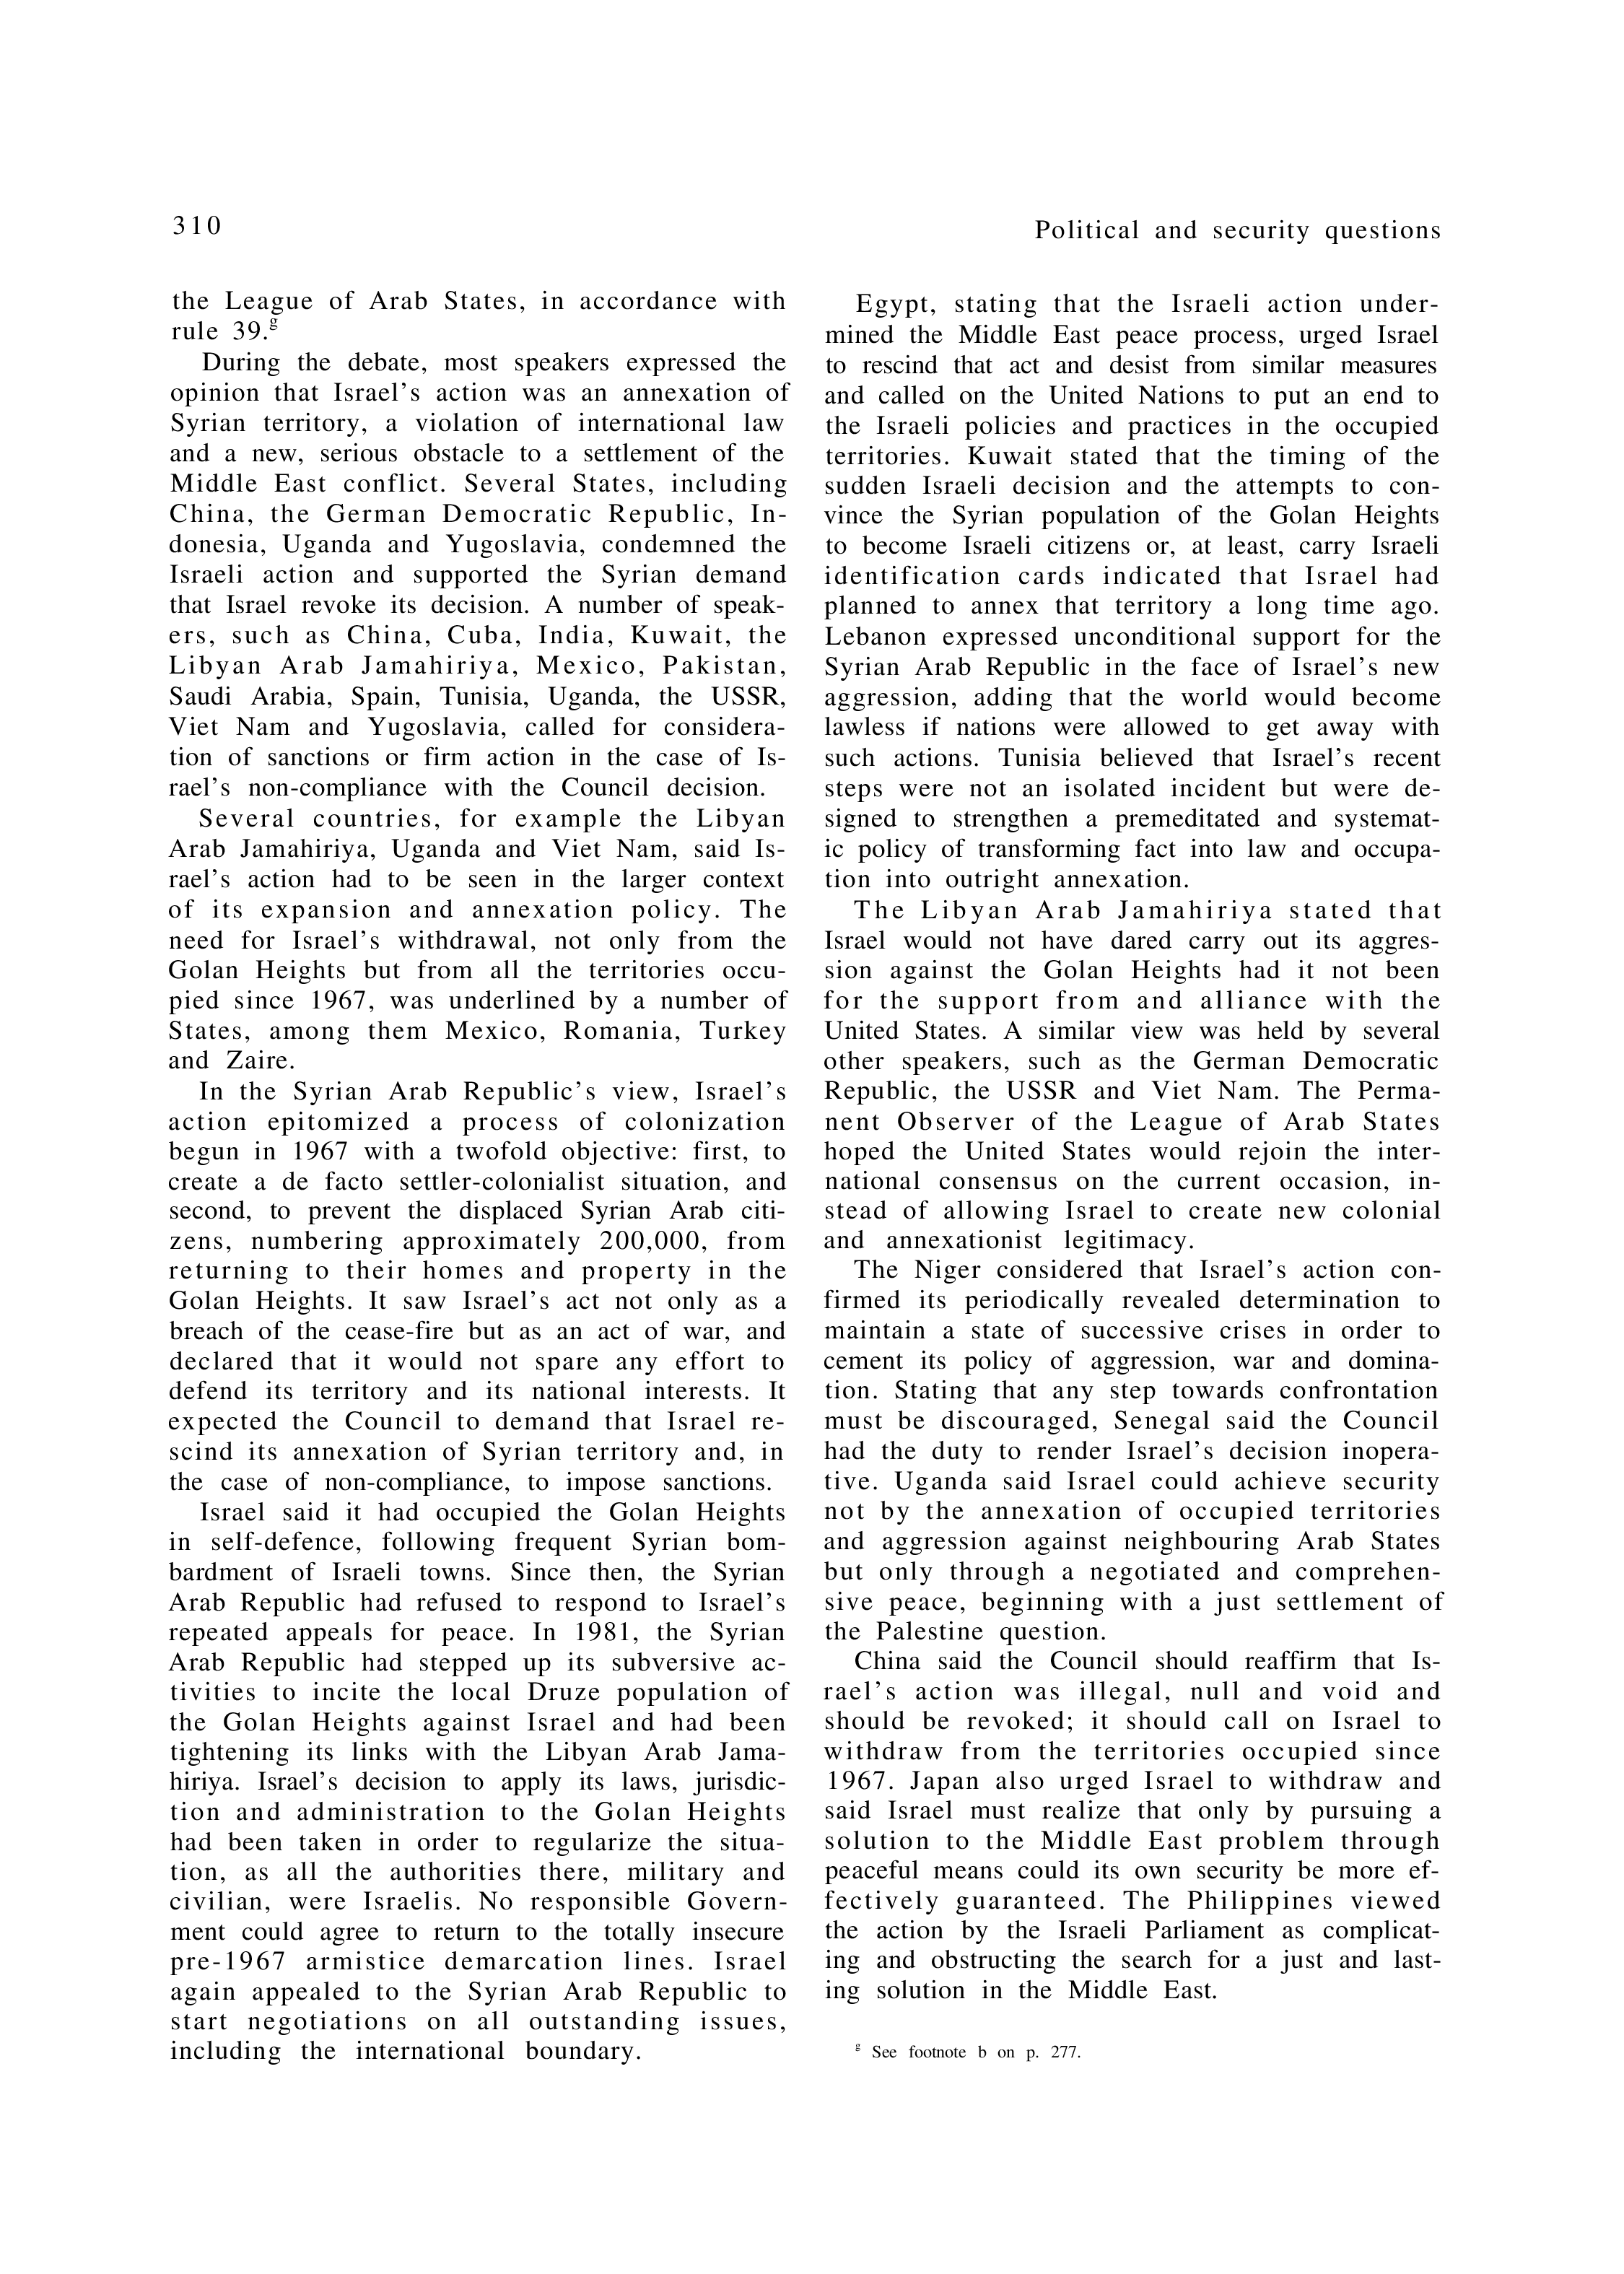 YUN Volume_Page 1981_322 excerpt